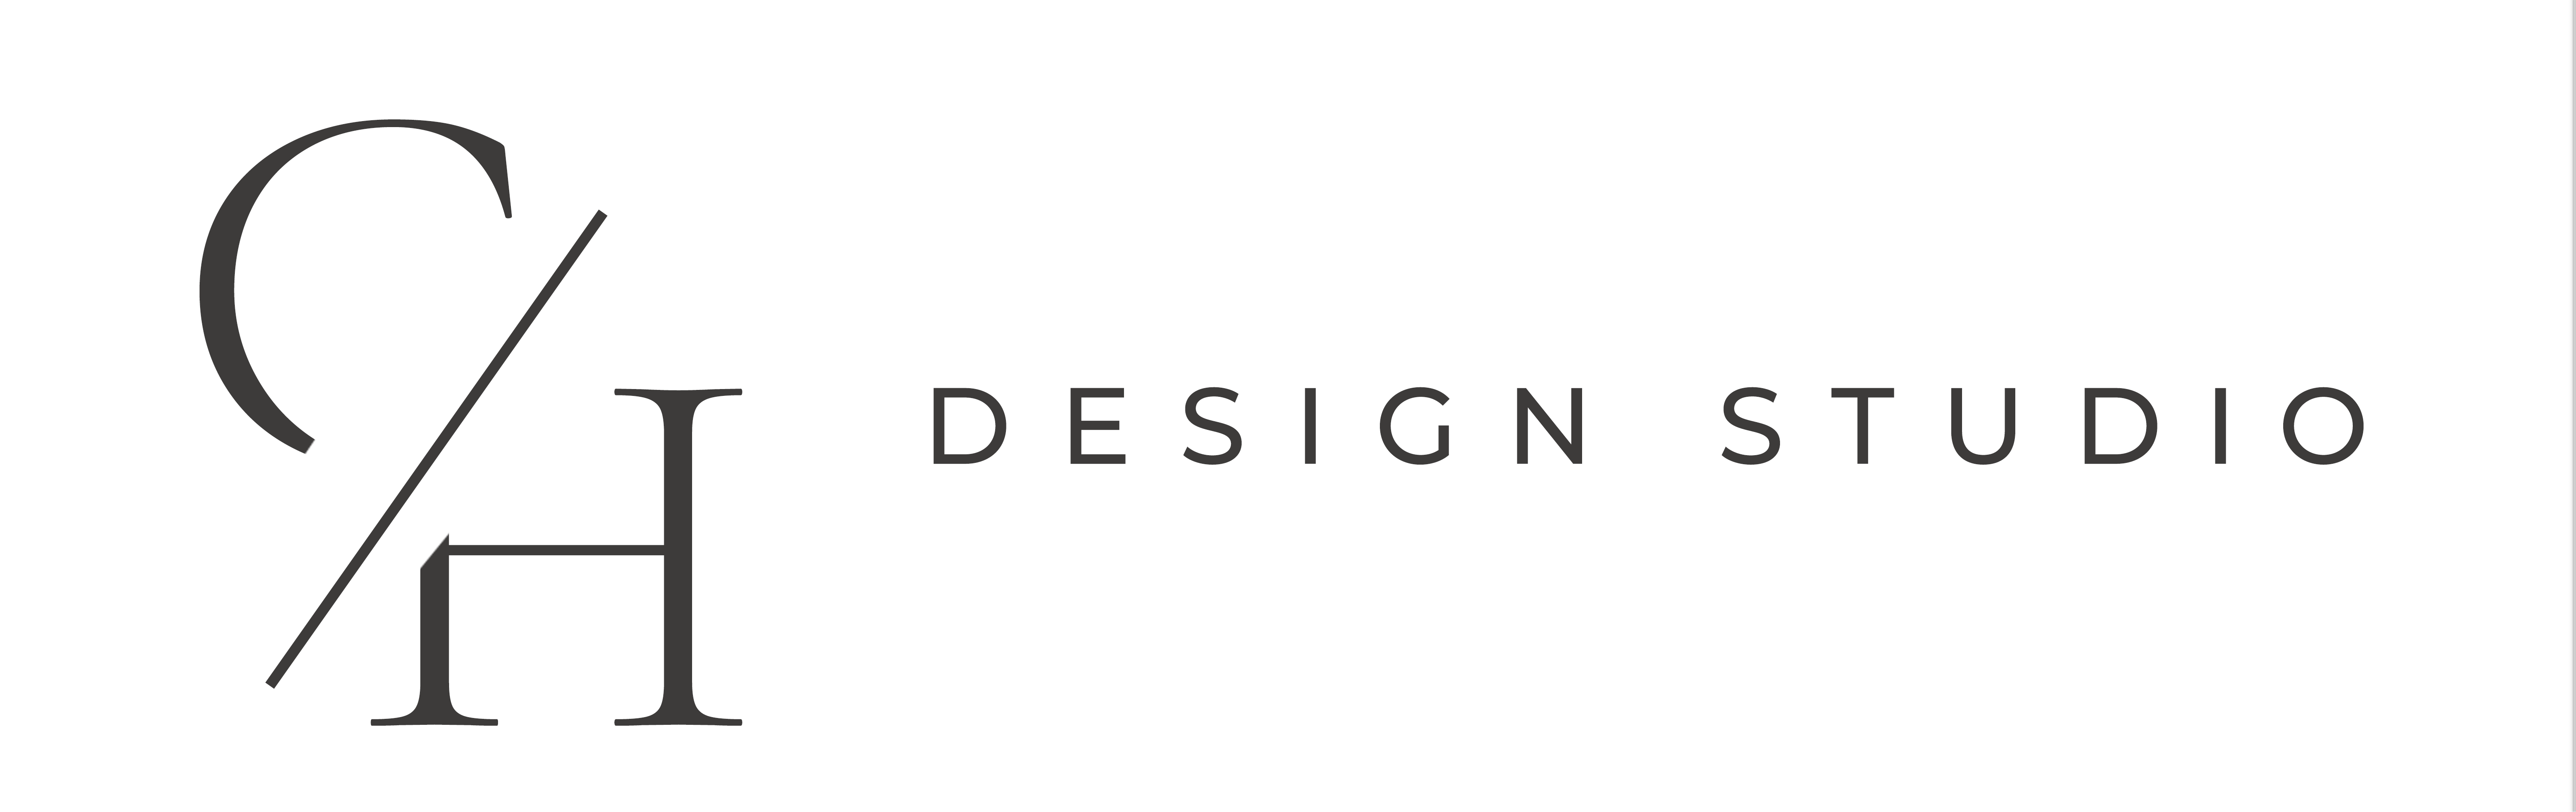 C&H Design Studio logo